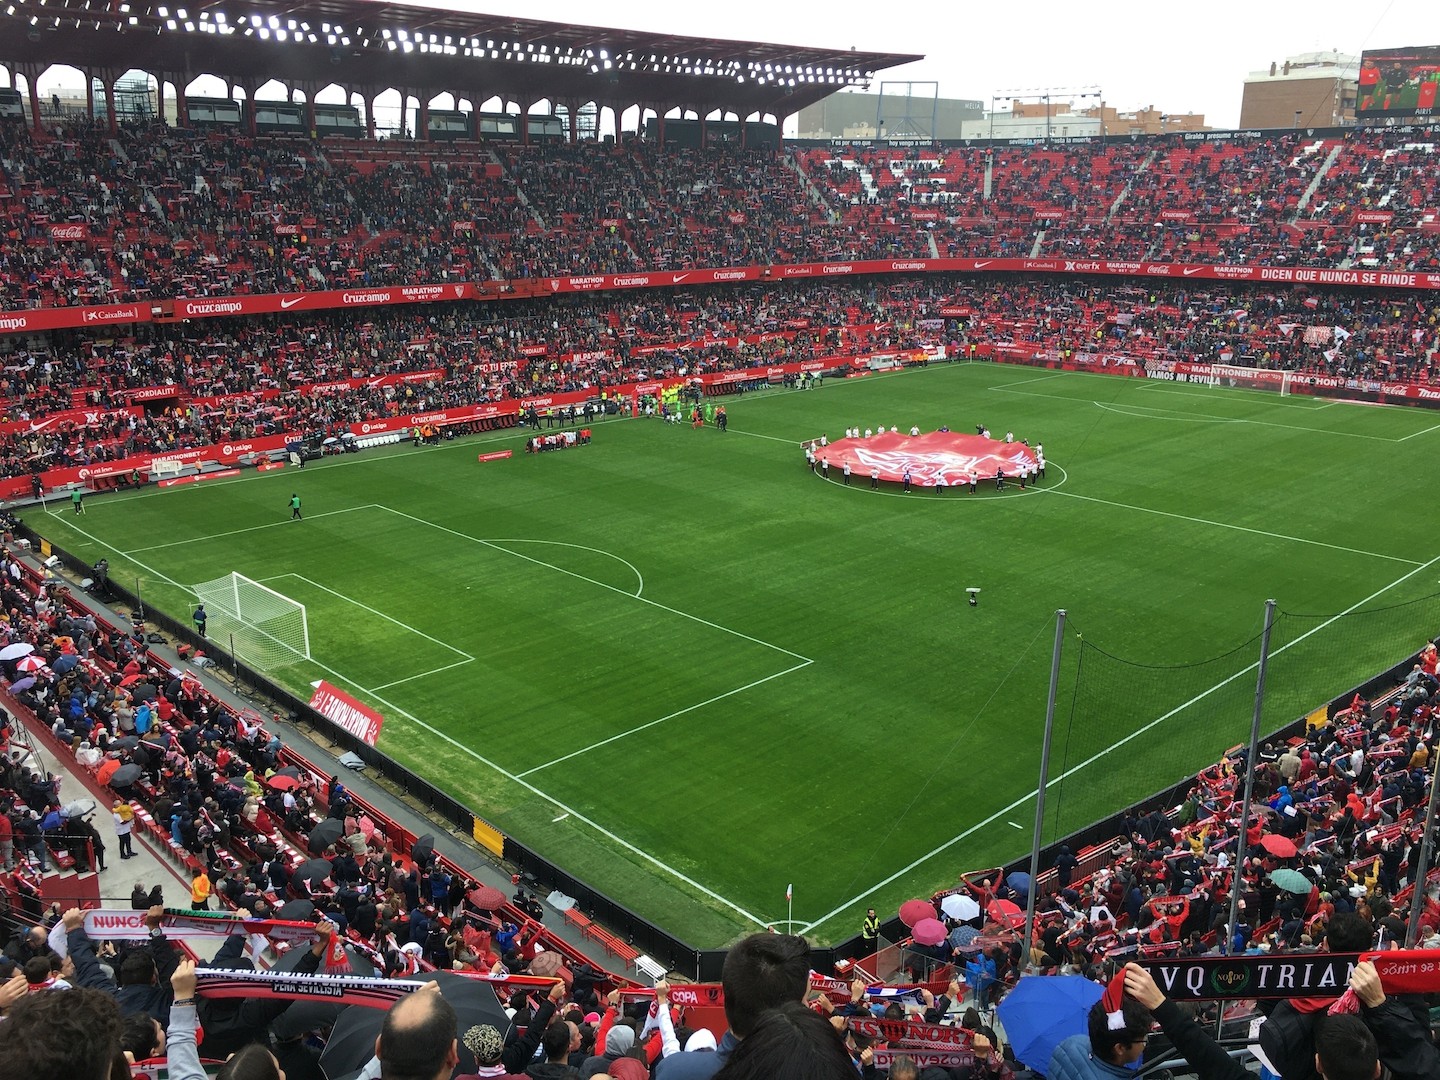 Voetbalreizen Sevilla FC